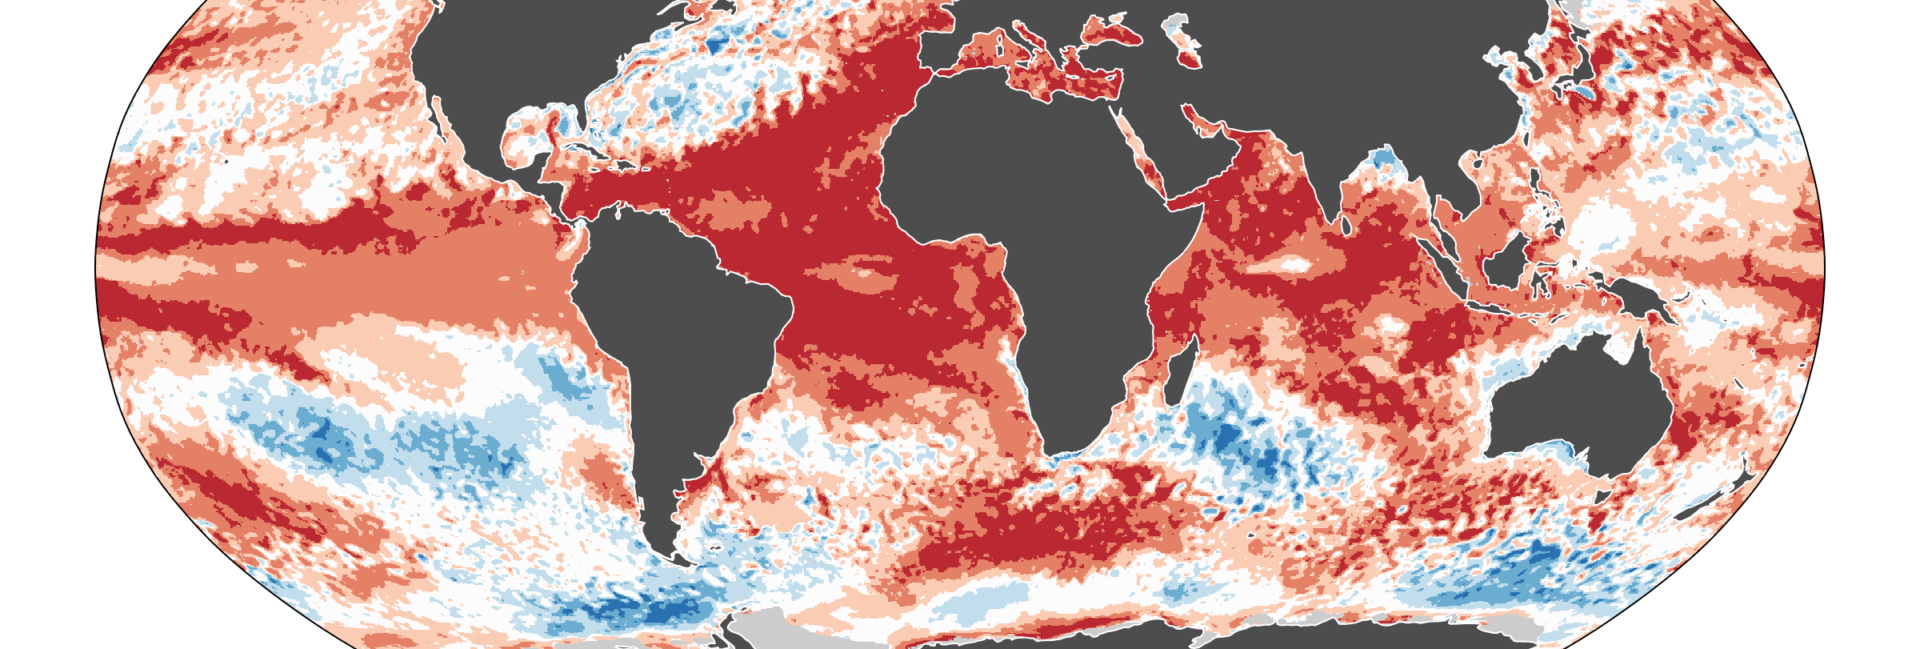 L'océan en surchauffe, une catastrophe annoncée ?